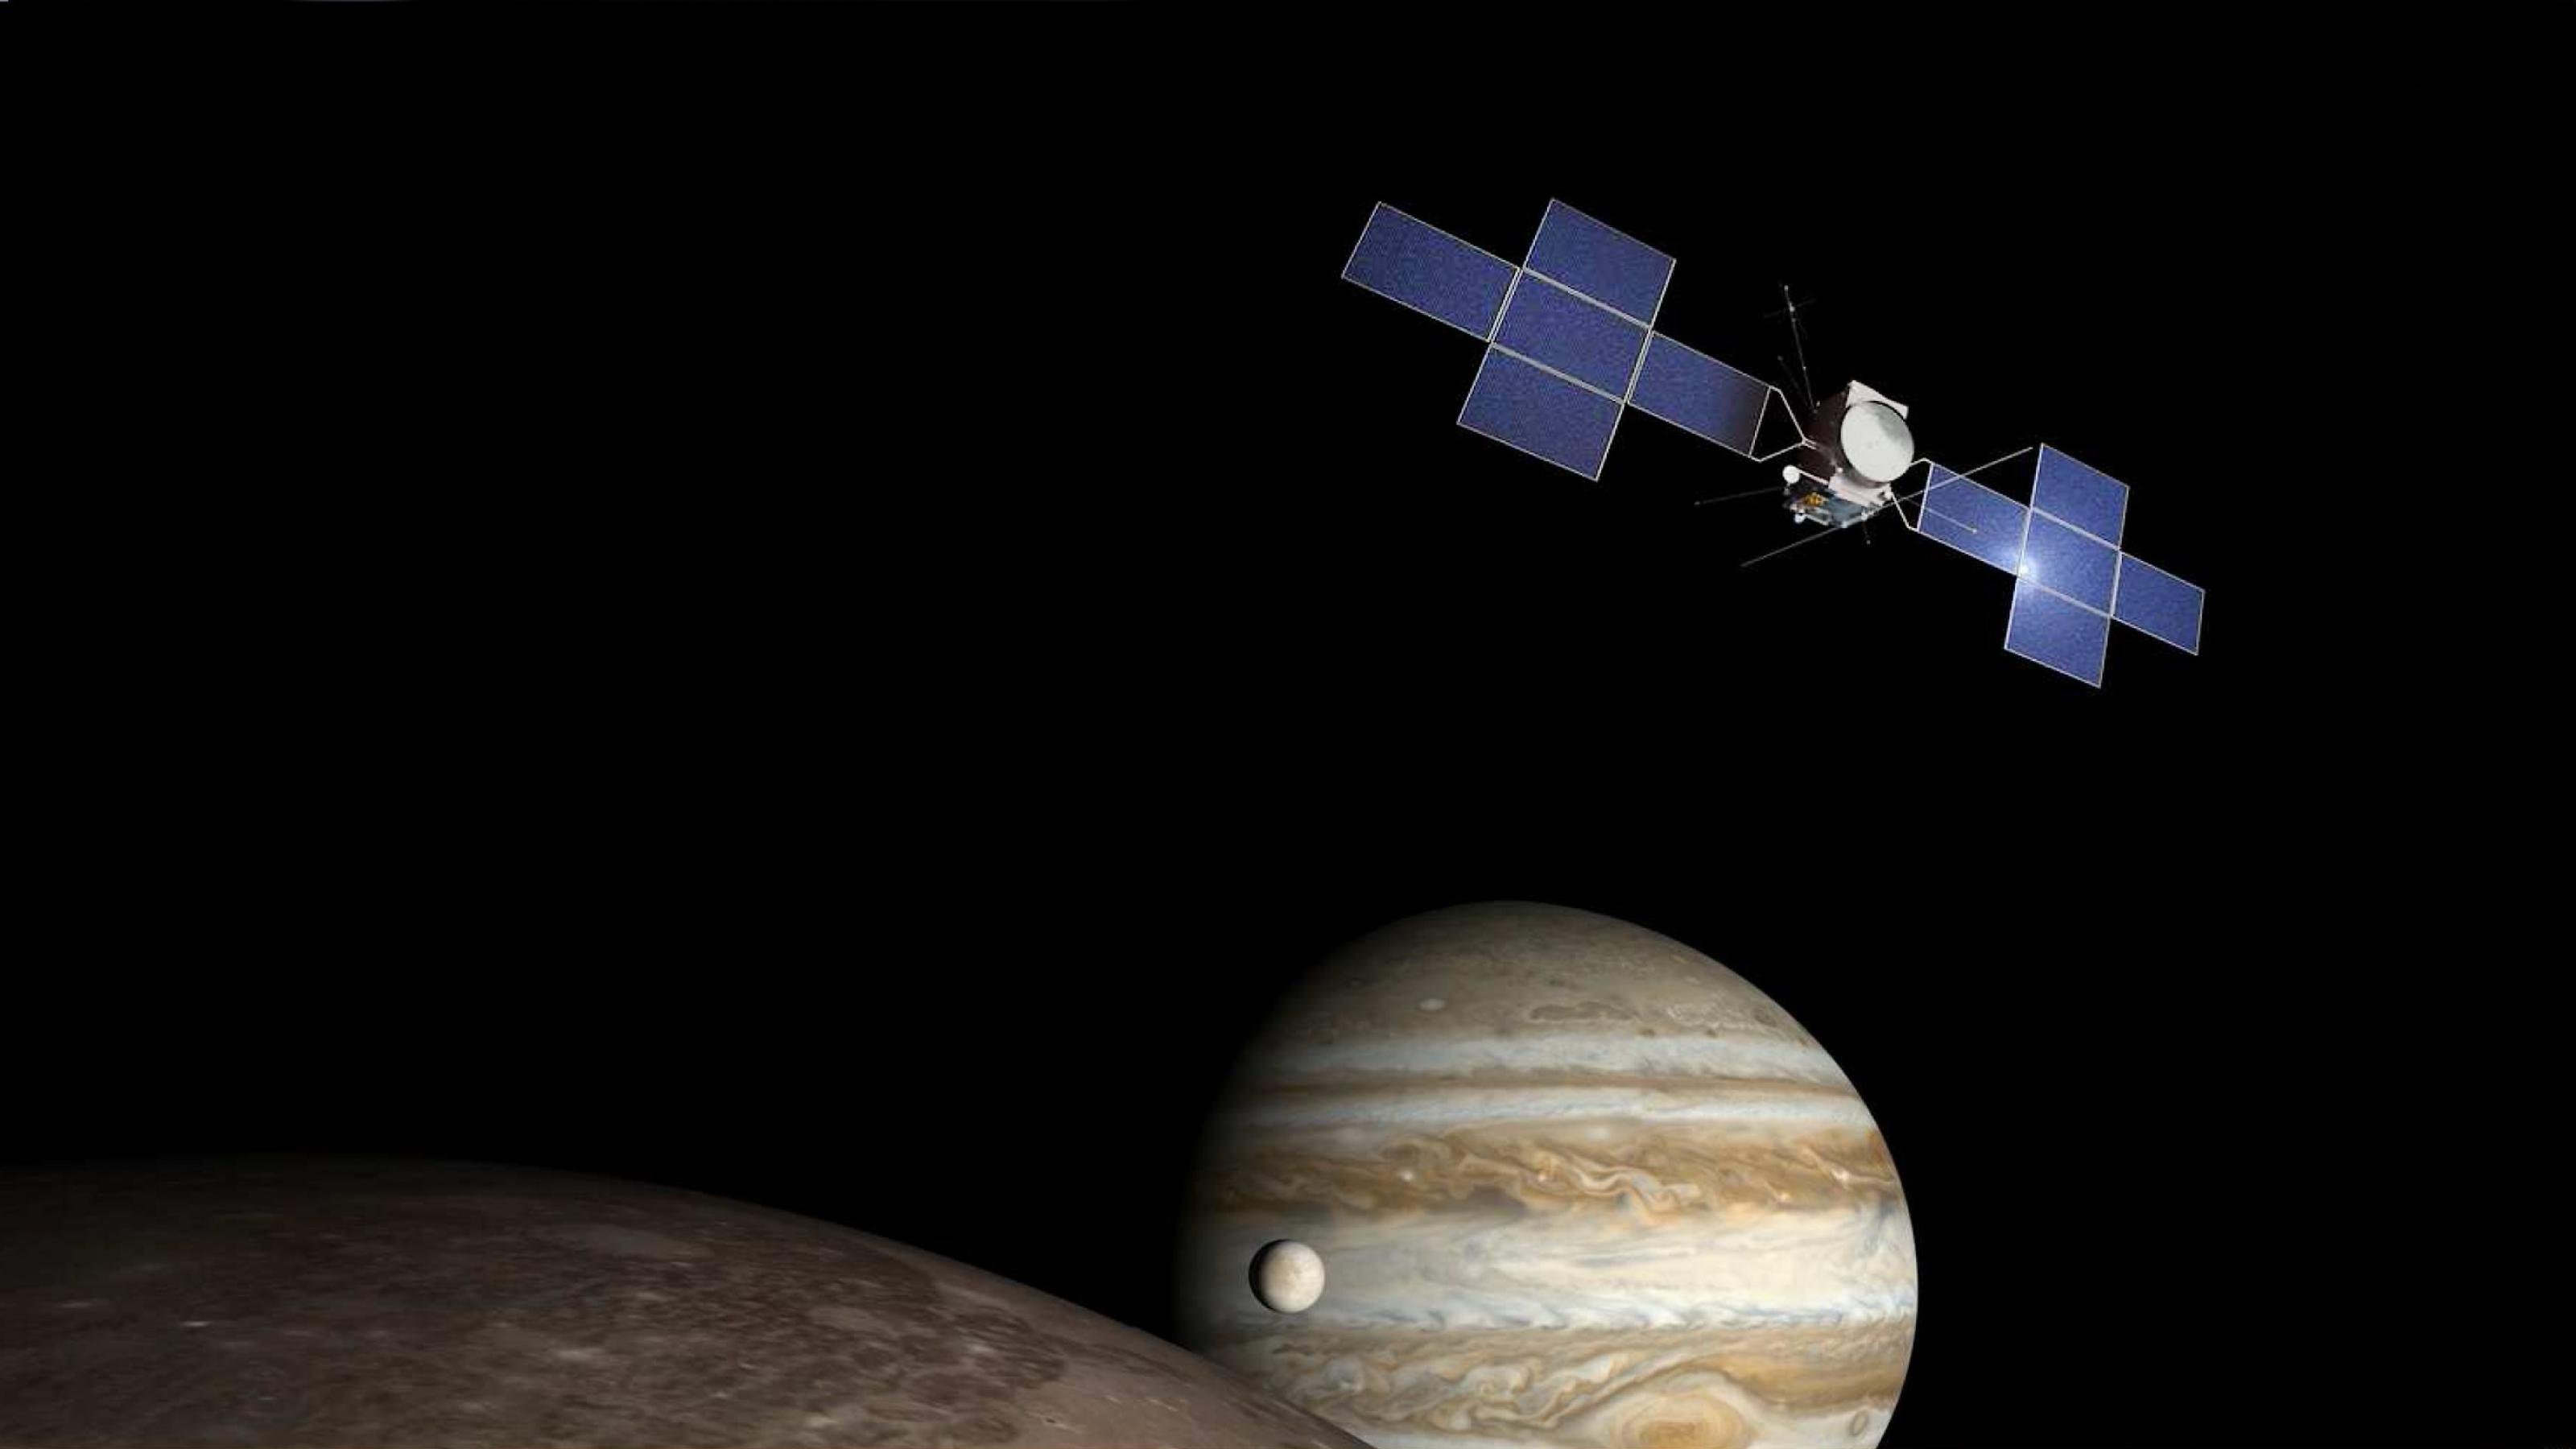 Sonda kosmiczna JUICE widoczna jest na ciemnym tle;  W dolnej części zdjęcia pojawia się Jowisz z dwoma swoimi księżycami galileuszowymi.